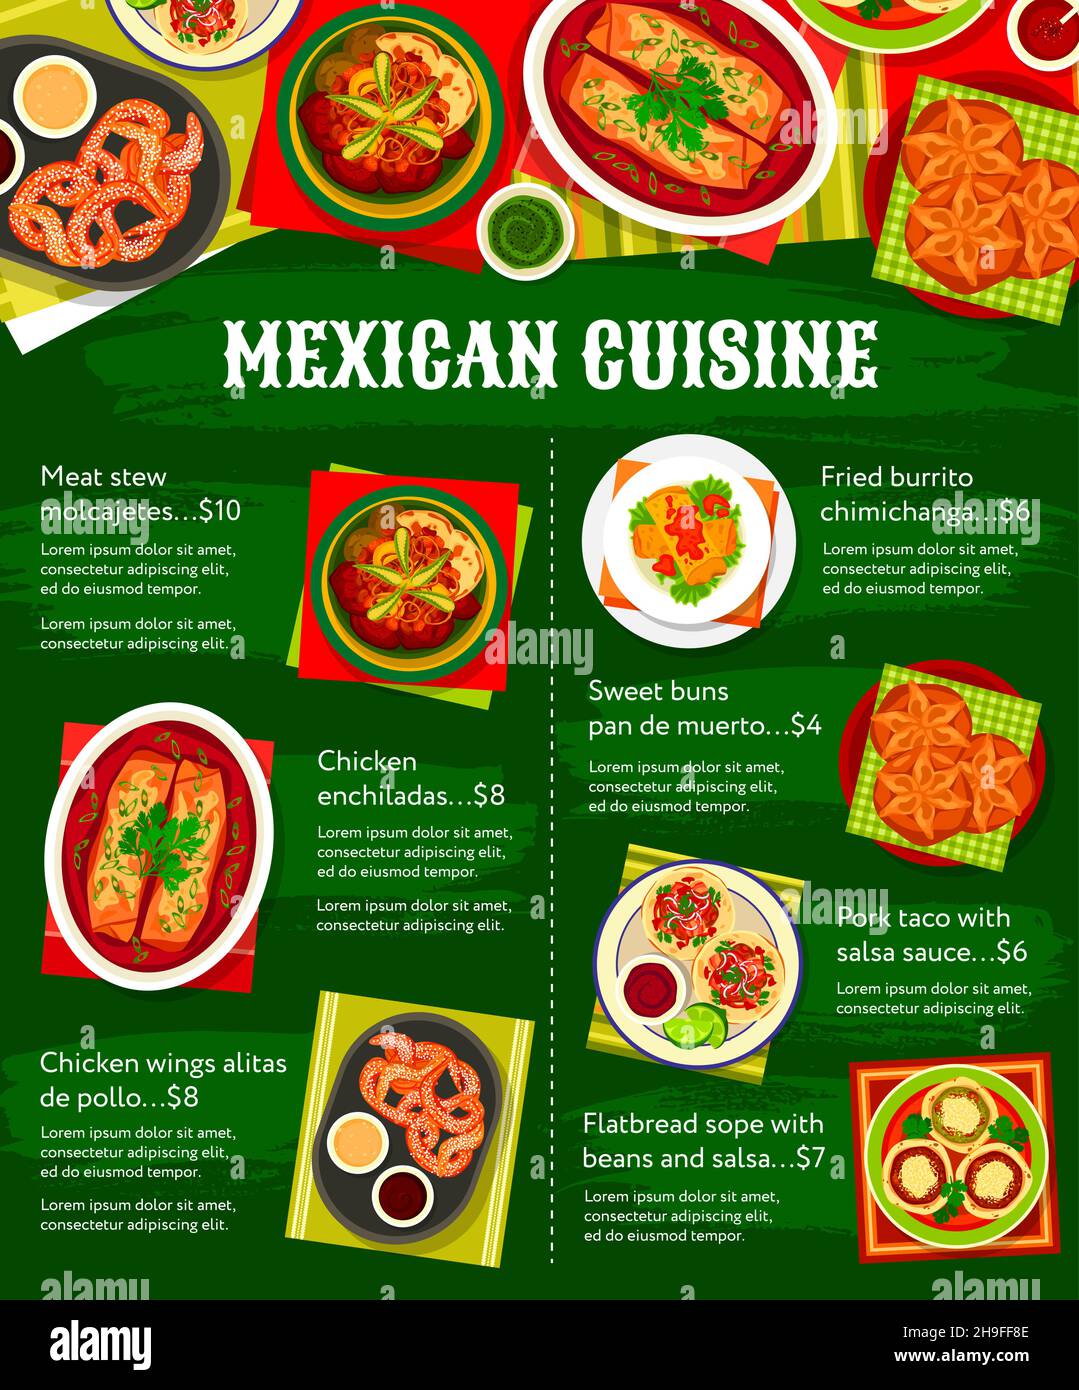 Cucina messicana, piatti di cucina e menu del ristorante, cena vettoriale e pranzo del ristorante messicano. Cucina messicana cibo tradizionale di carne, chicke Illustrazione Vettoriale